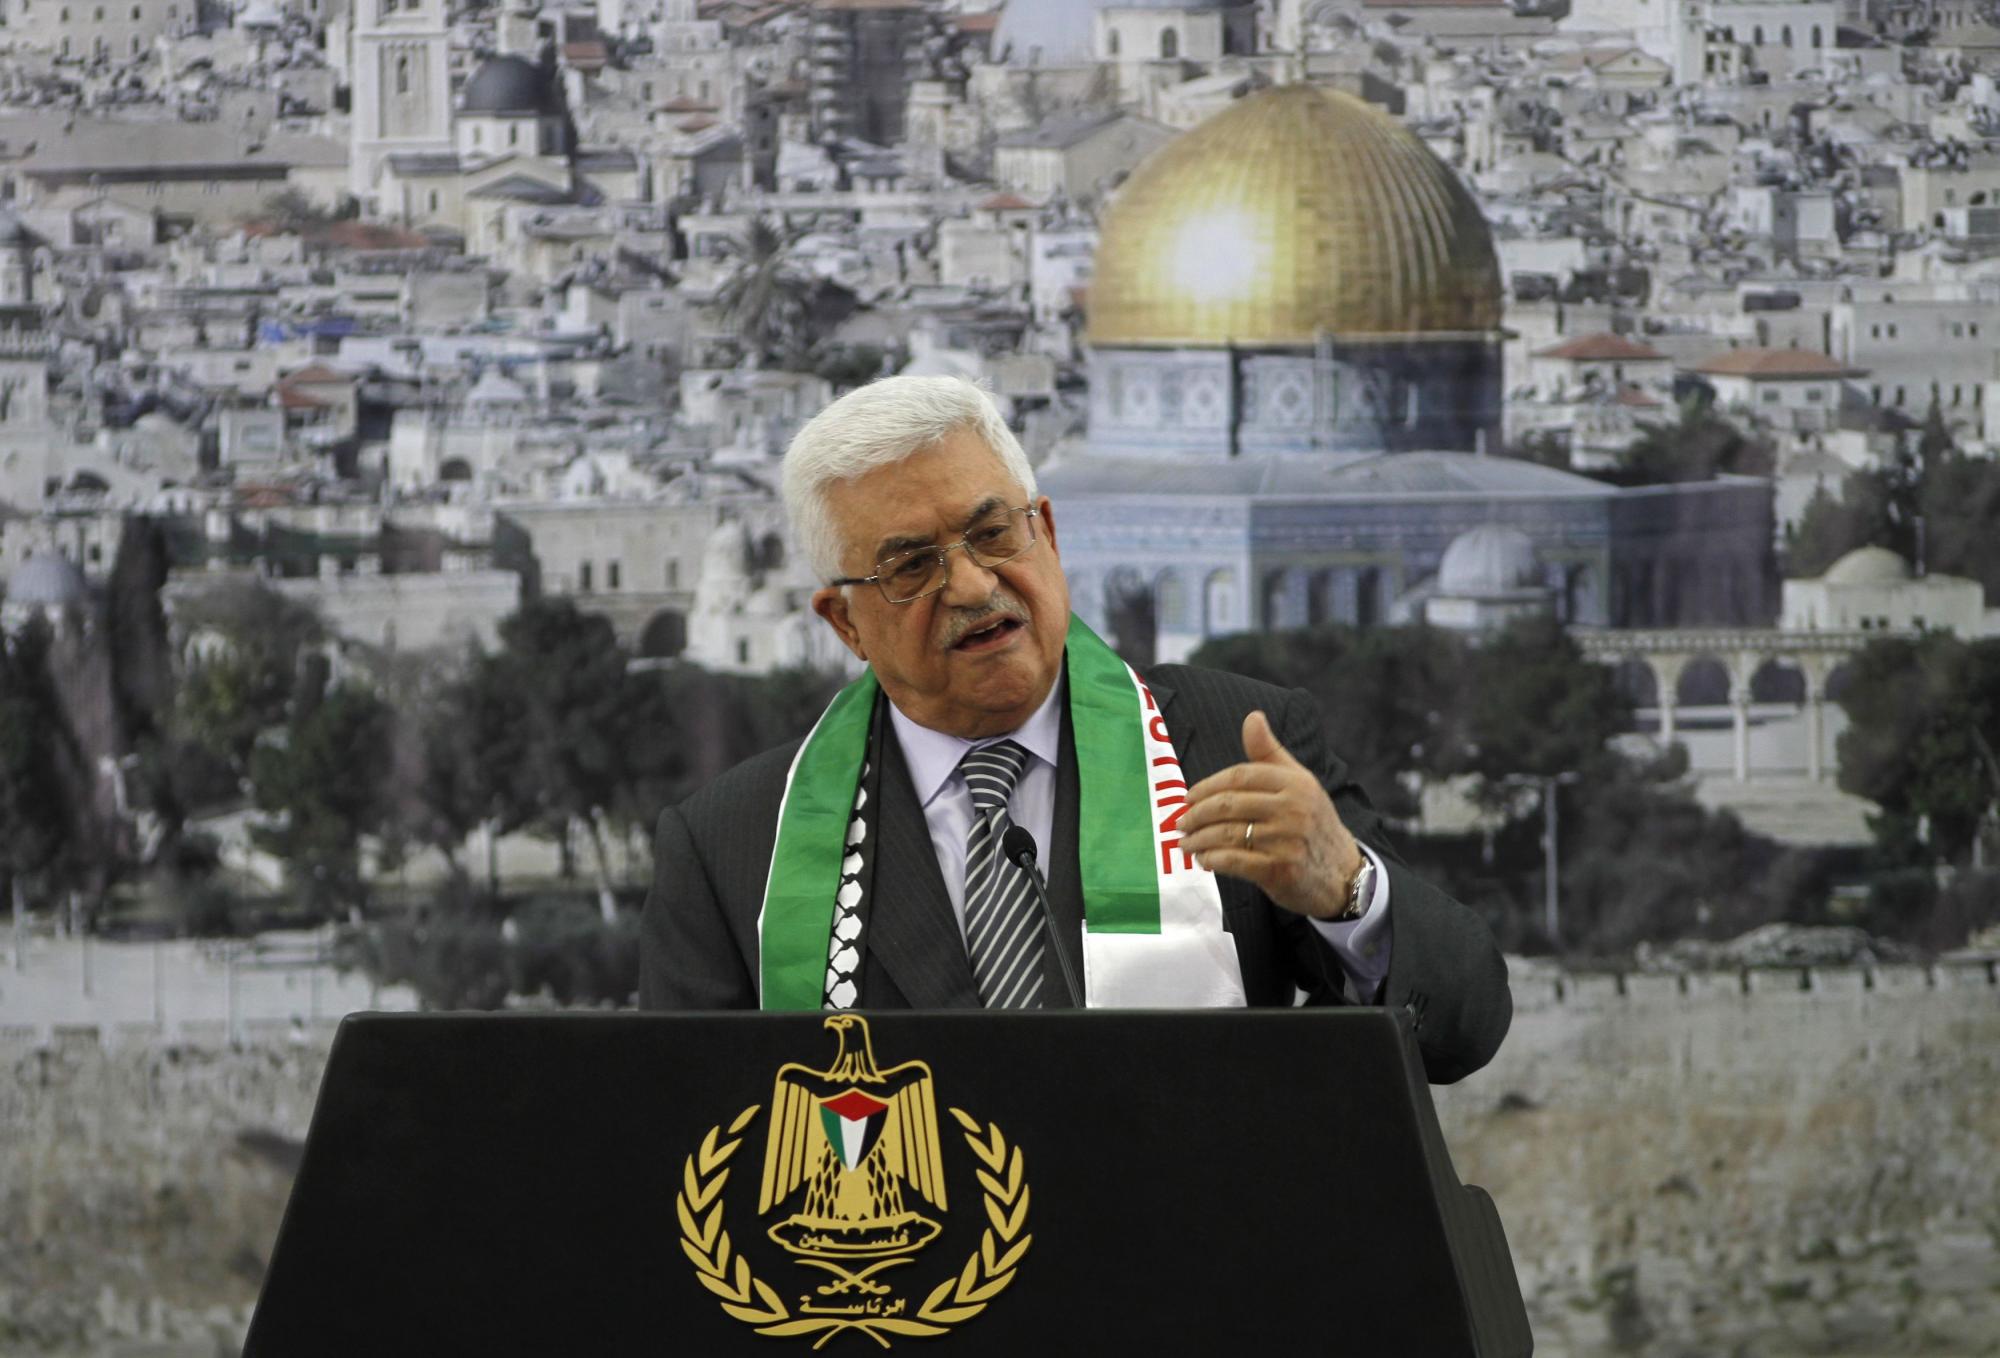 以色列暗示或出兵加沙 奥巴马重申反对巴勒斯坦“入联”